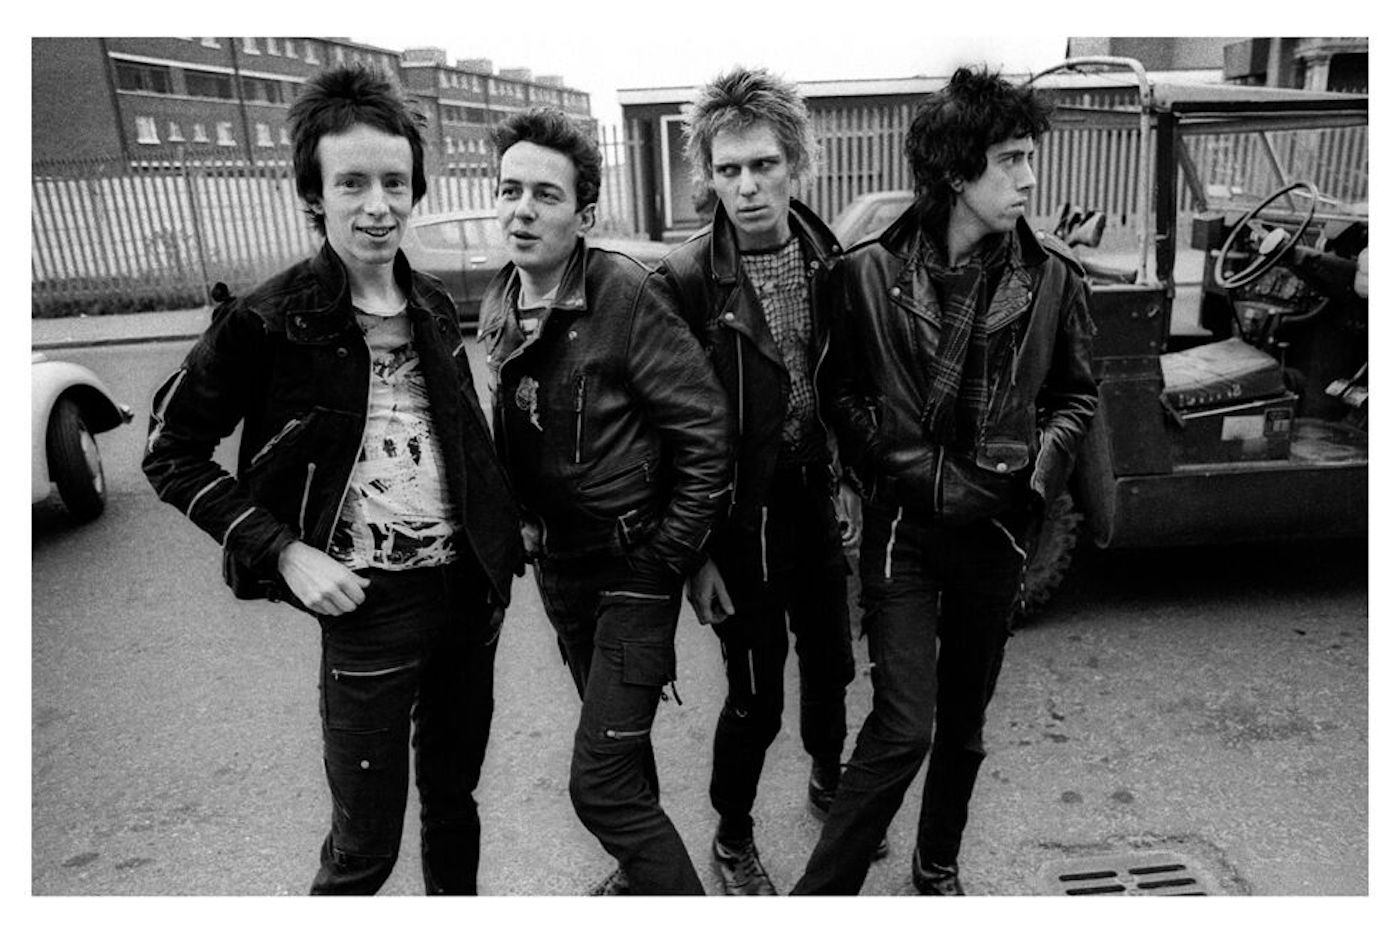 The Clash: white riot, black riot